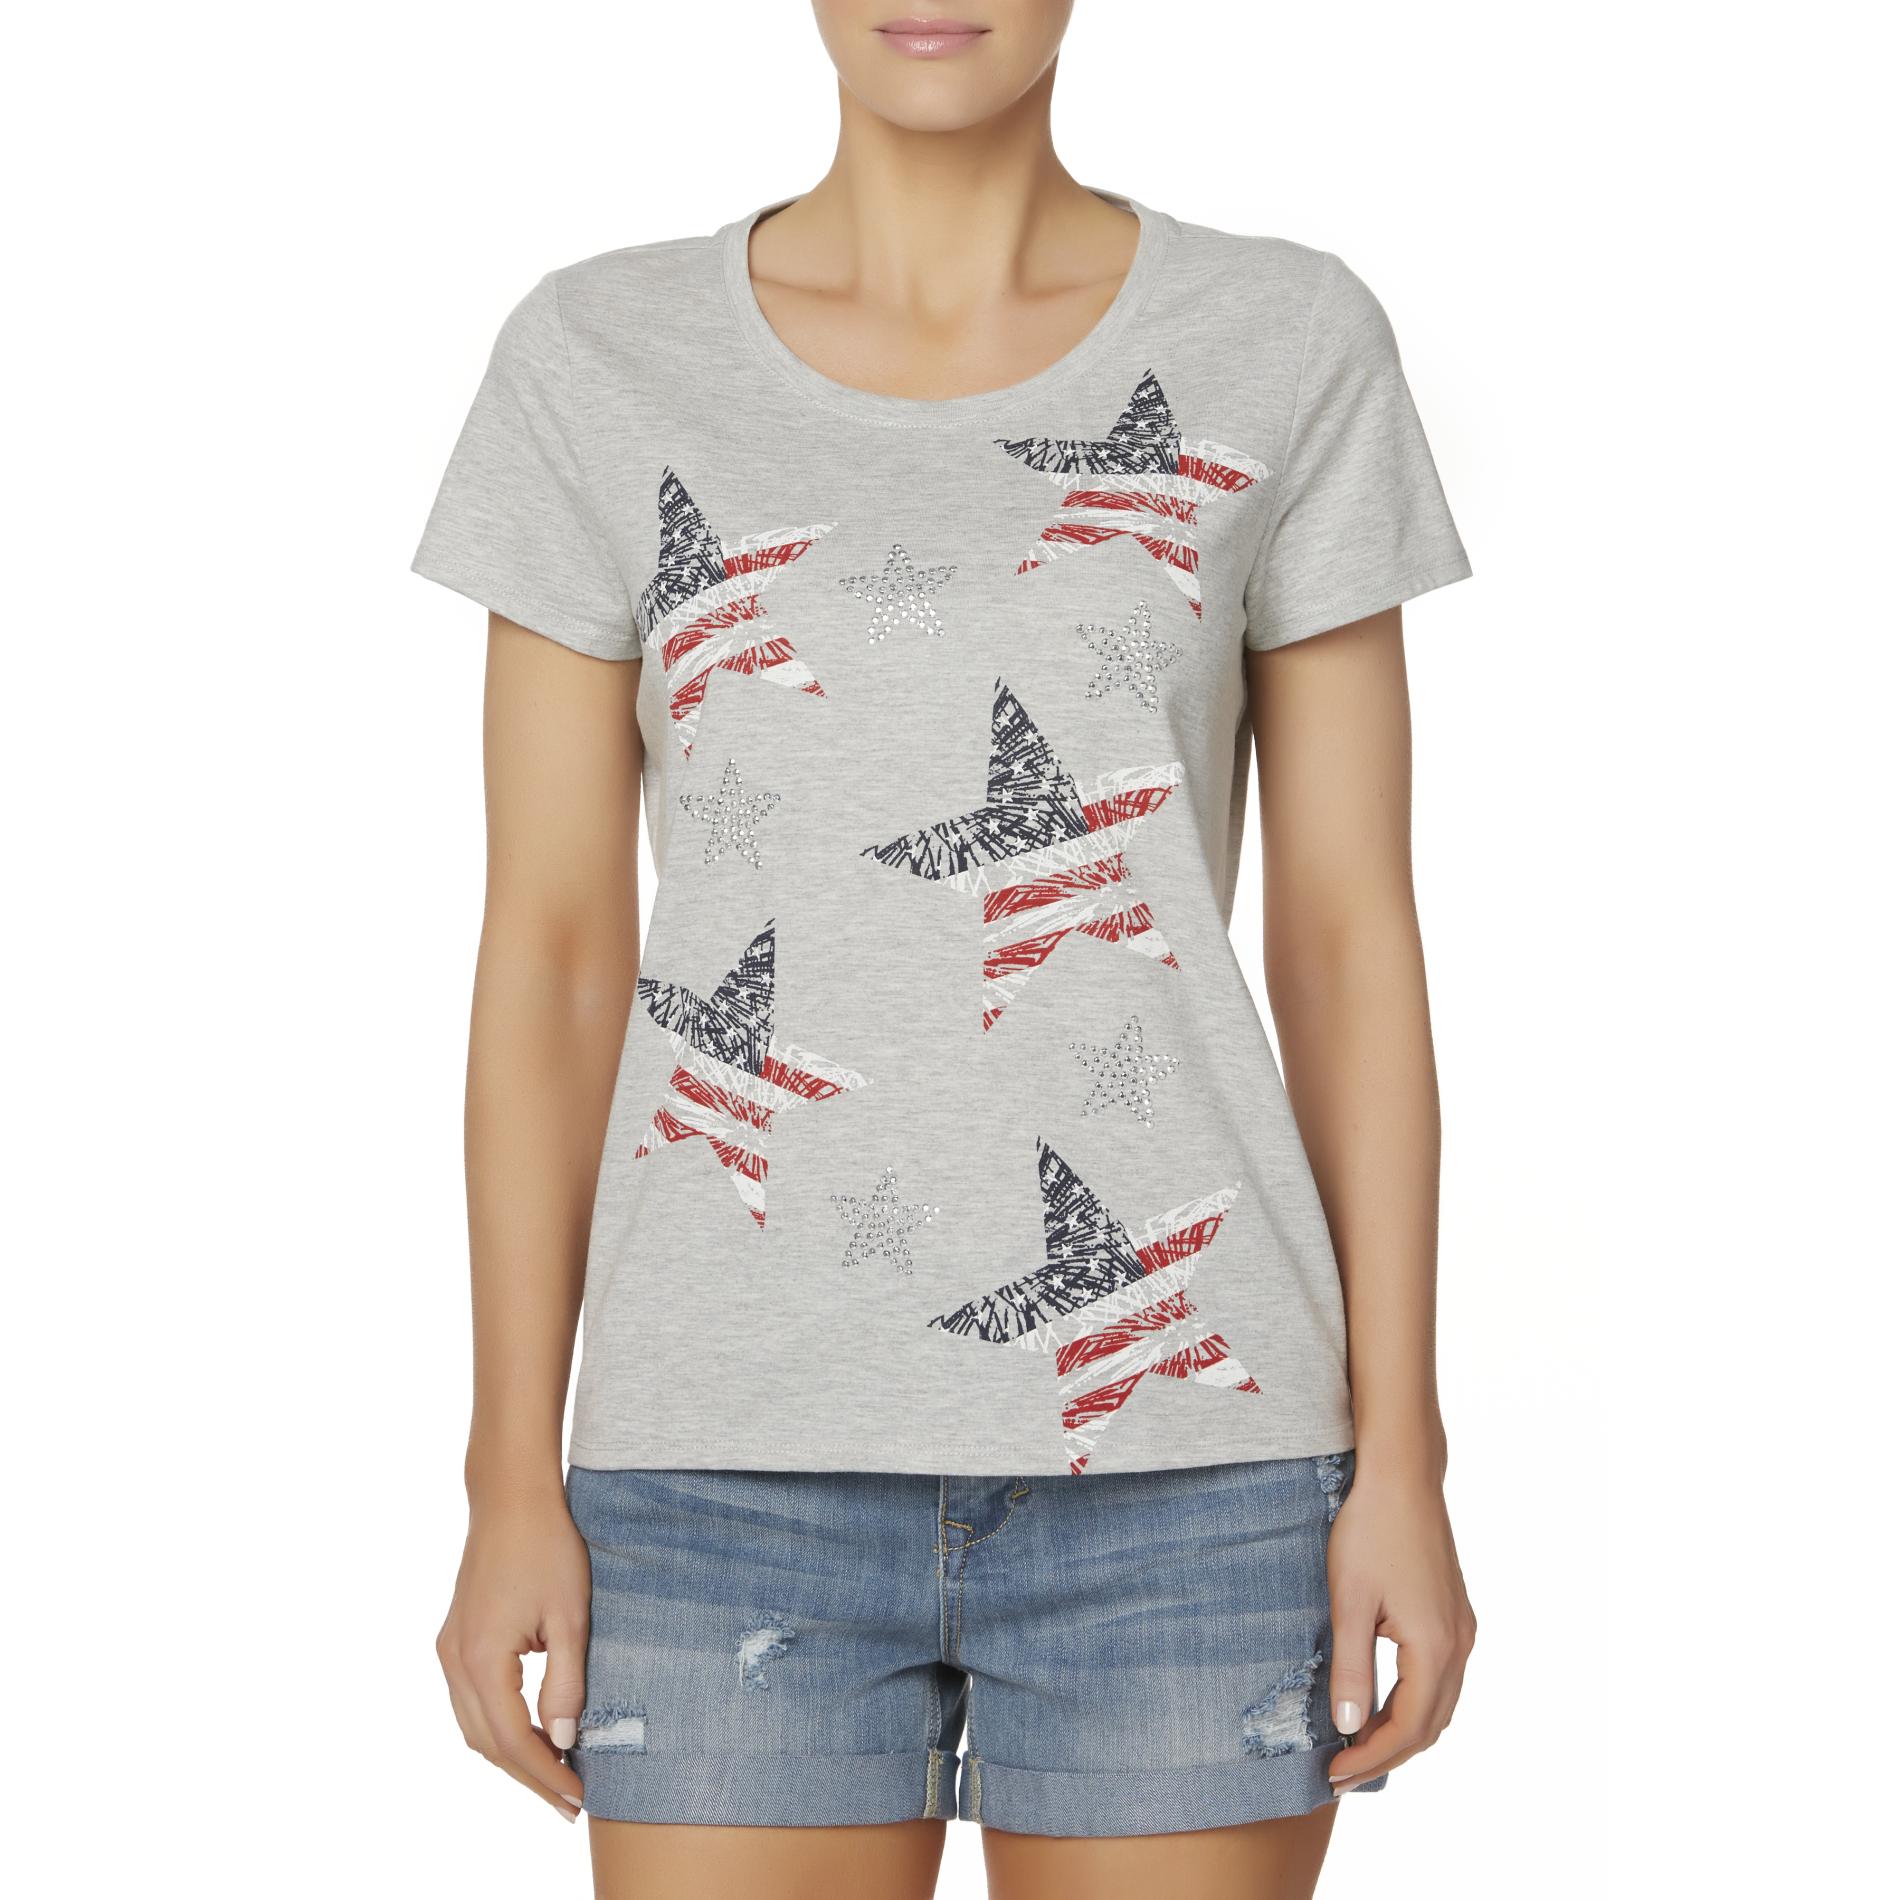 Laura Scott Women's Patriotic T-Shirt - Stars